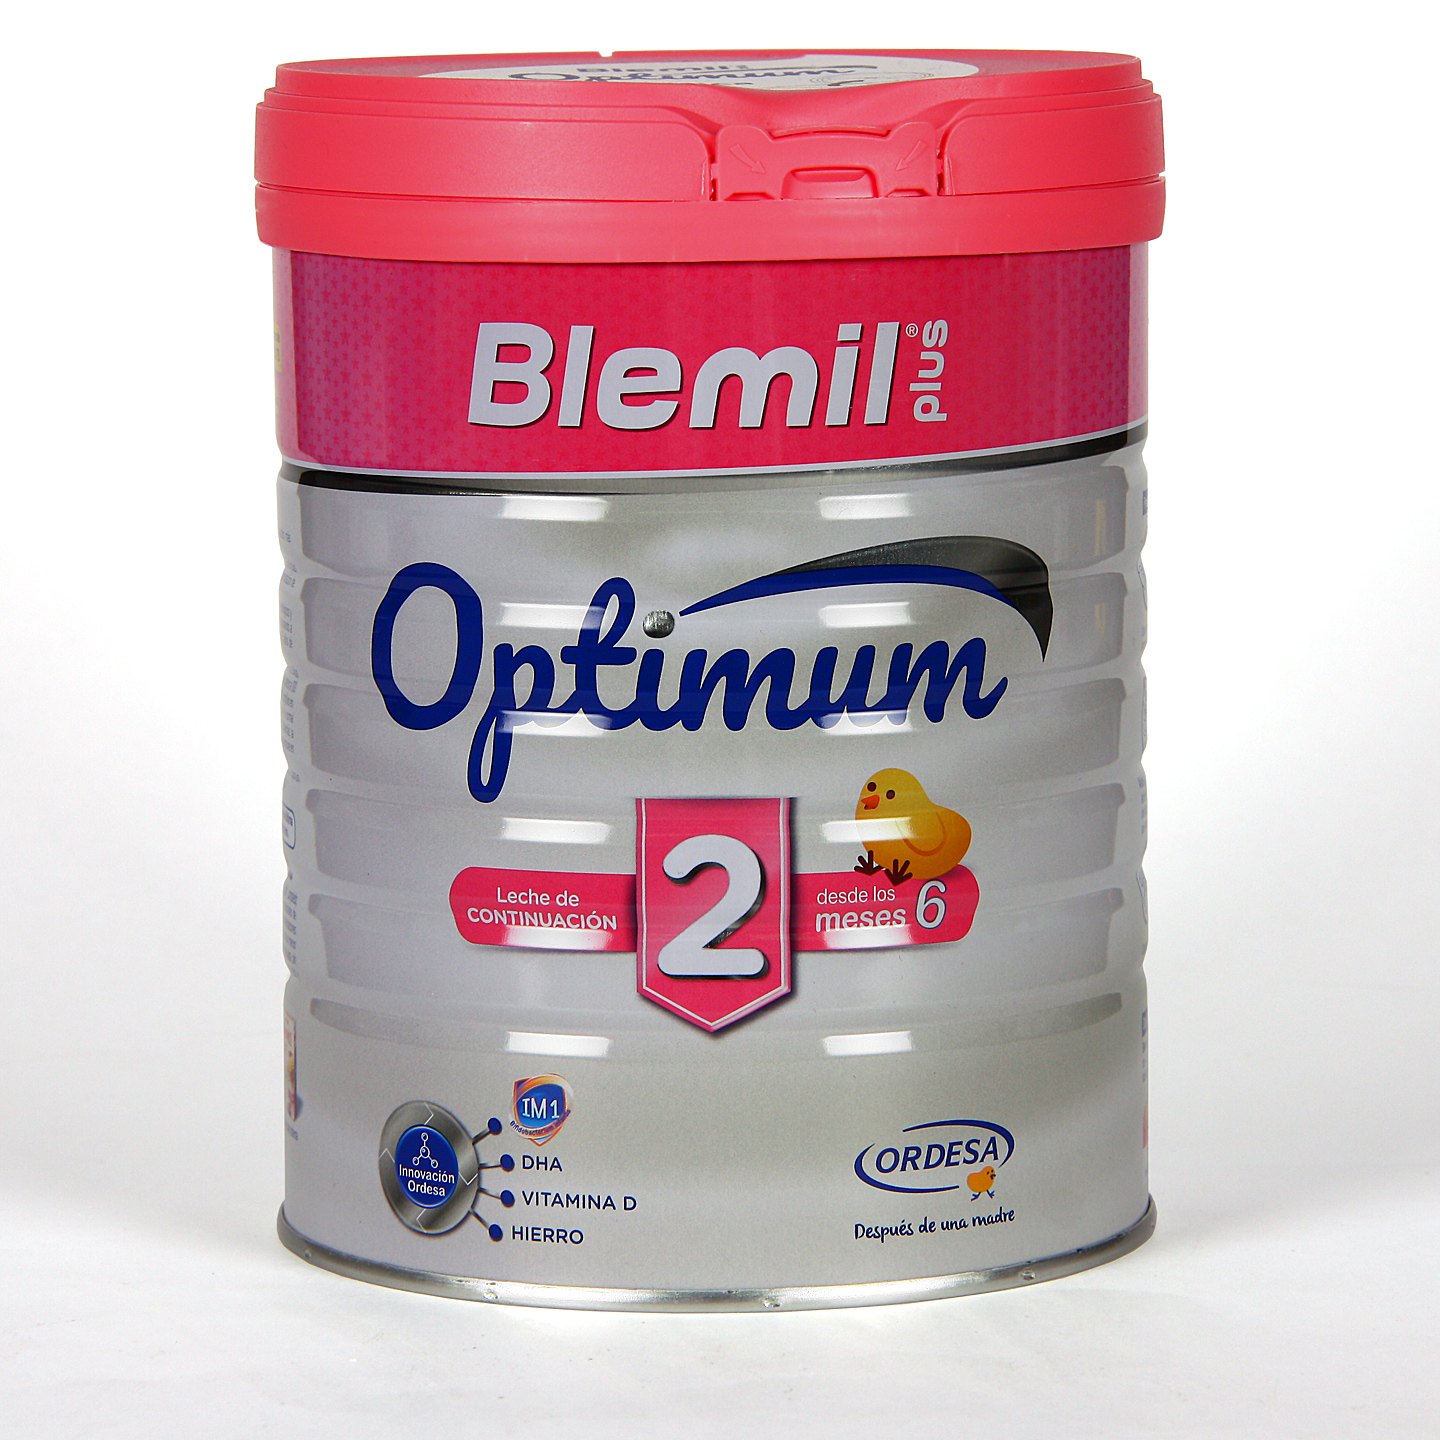 Blemil Plus 3 Optimum Latas 1200 G - Farmacia Online Barata Liceo